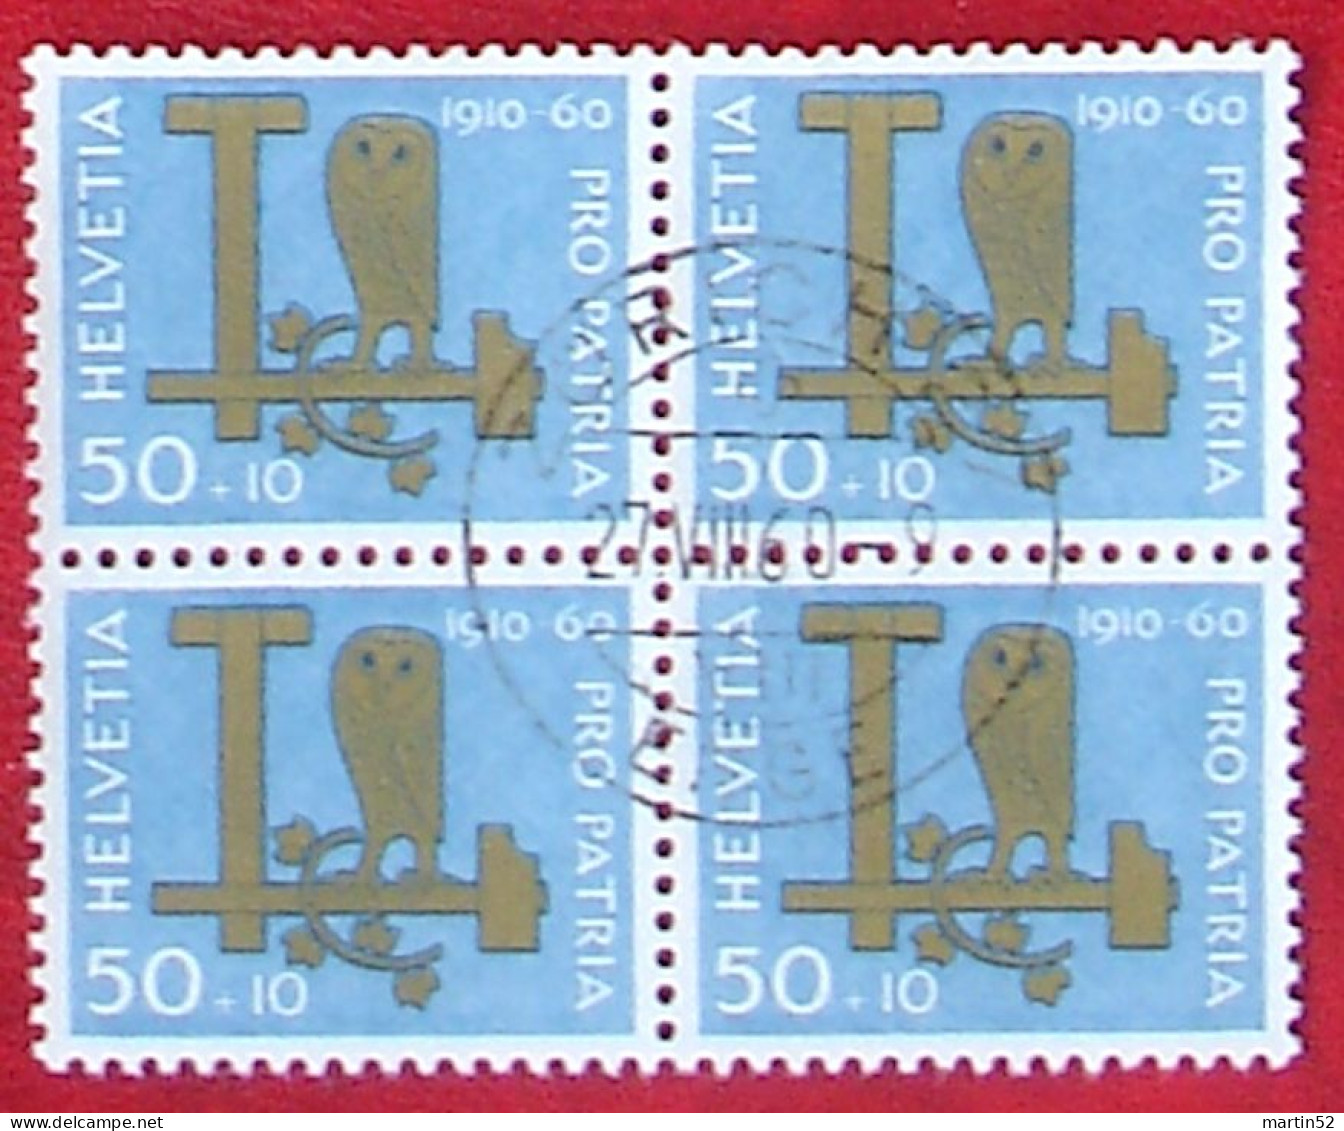 Schweiz Suisse Pro Patria 1960: Eule Hibou Owl Zu WII 100 Mi 718 Yv 665 Block Mit O ZÜRICH 27.VIII.60 (Zu CHF 32.00) - Owls